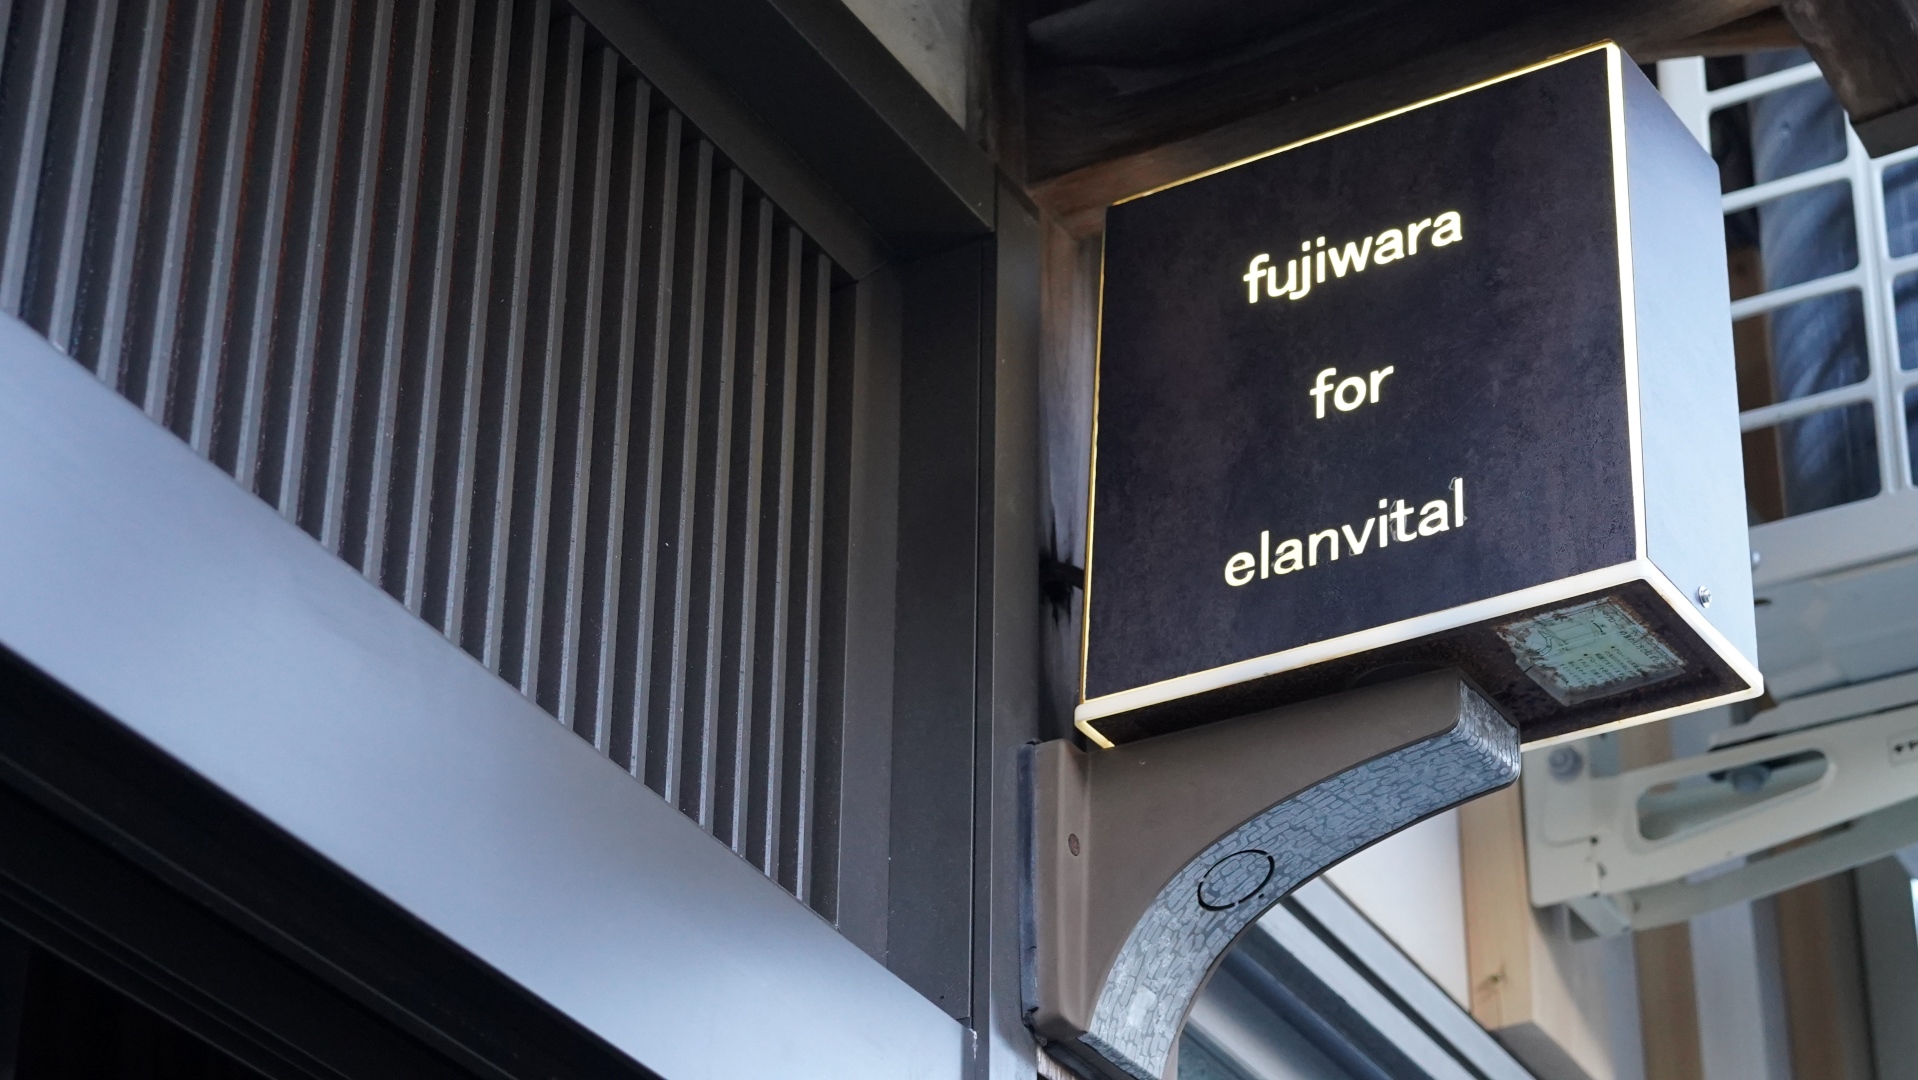 fujiwara for elanvital